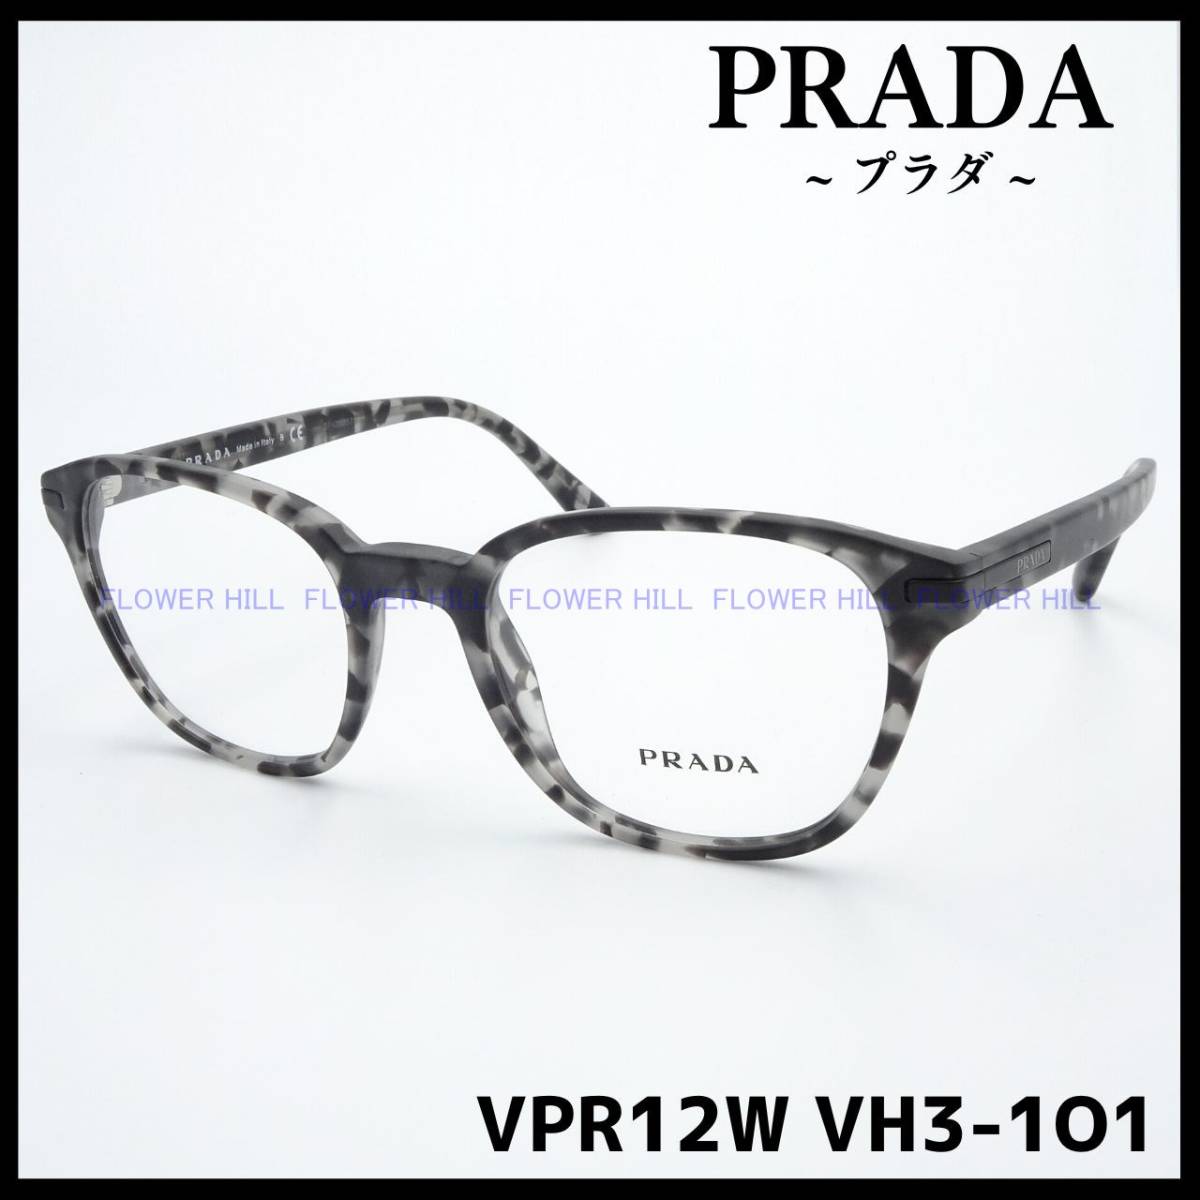 【新品・送料無料】プラダ PRADA メガネ フレーム ウェリントン VPR12W VH3-1O1 マットグレーハバナ メンズ レディース めがね 眼鏡